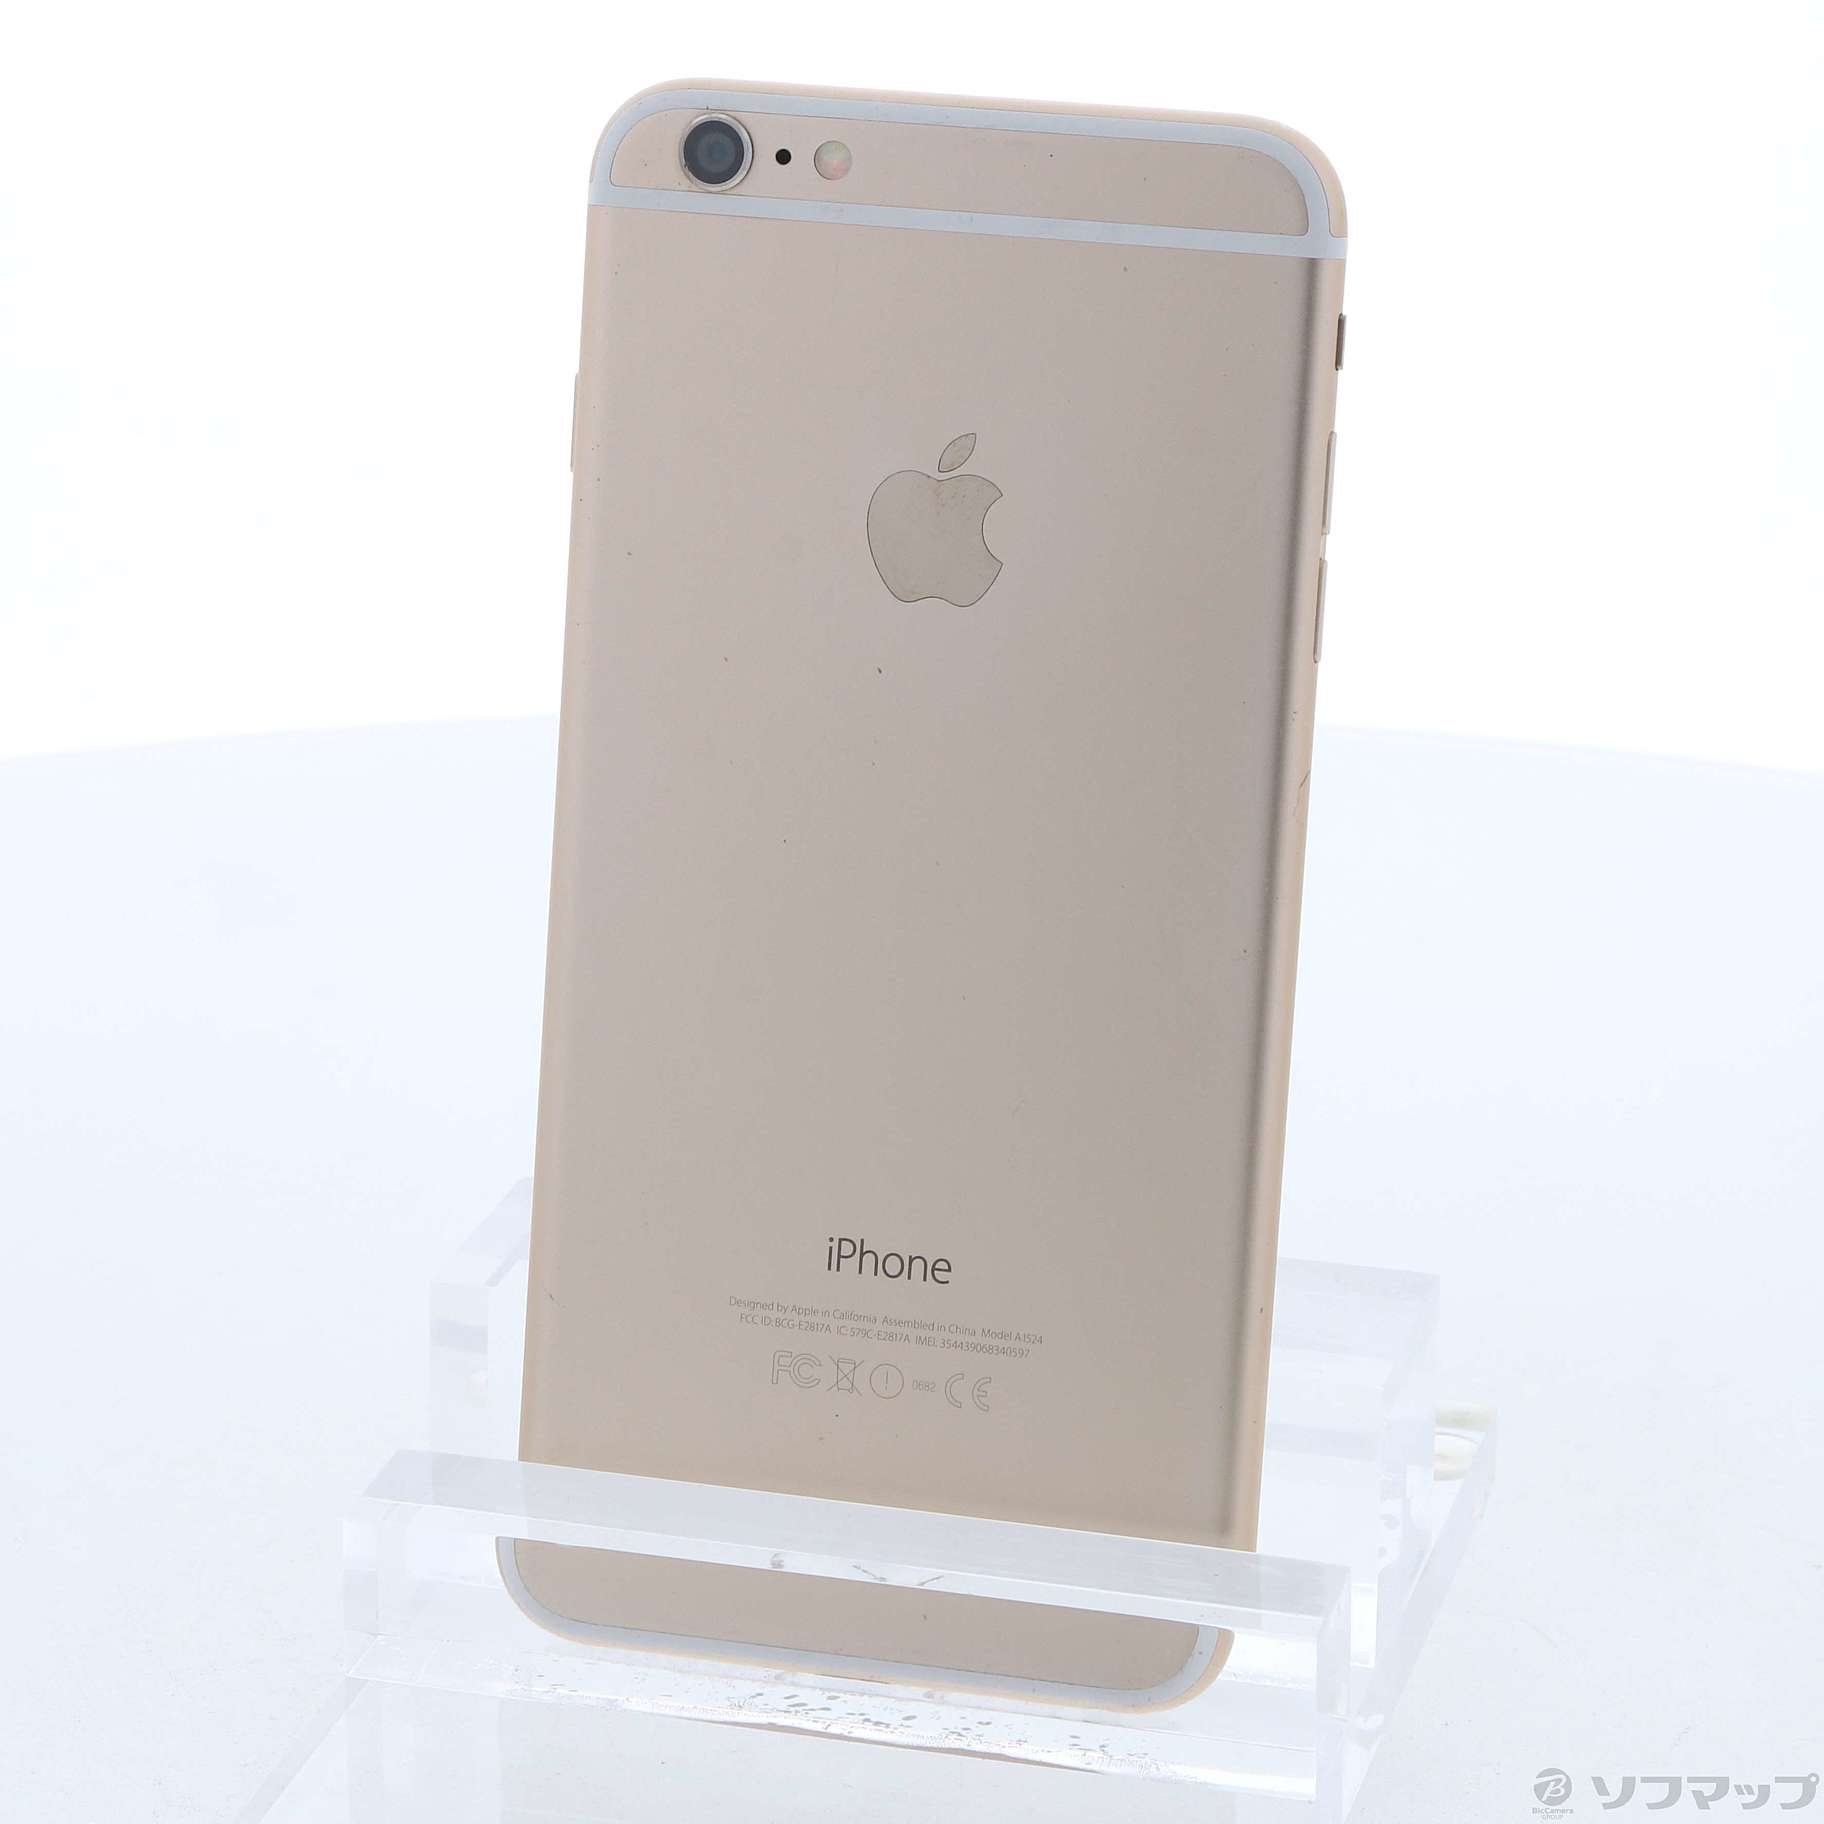 iPhone 6 Plus Gold 128 GB docomo